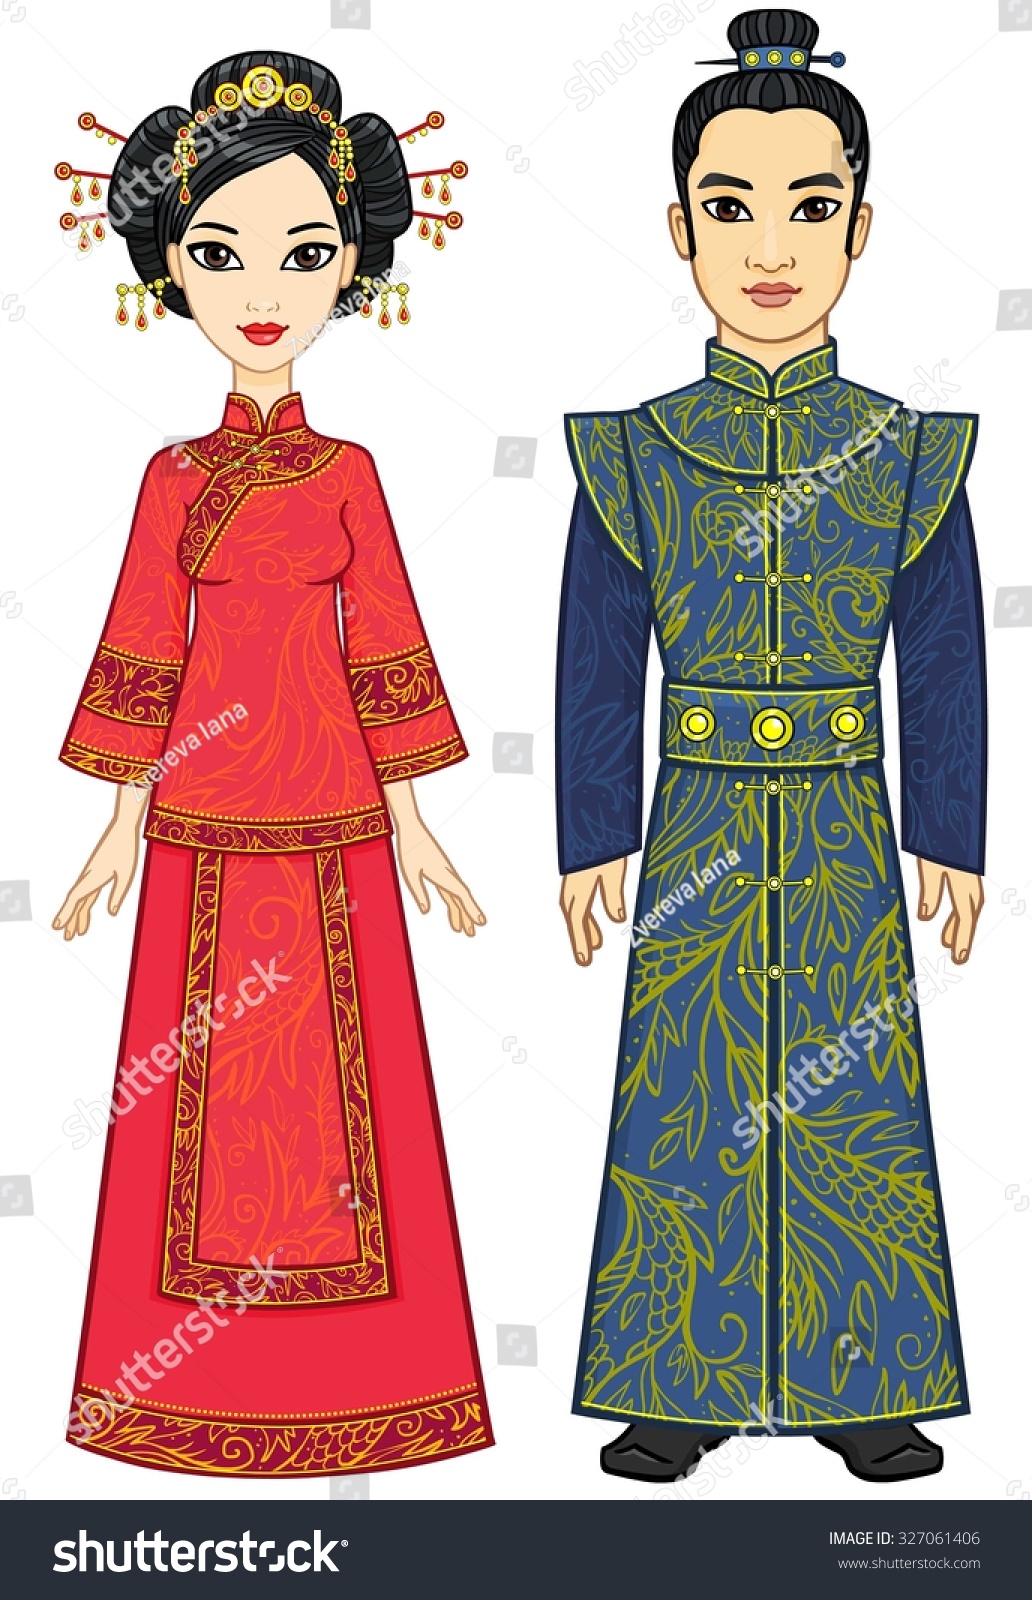 Портрет анимации женщины в традиционном китайском костюме